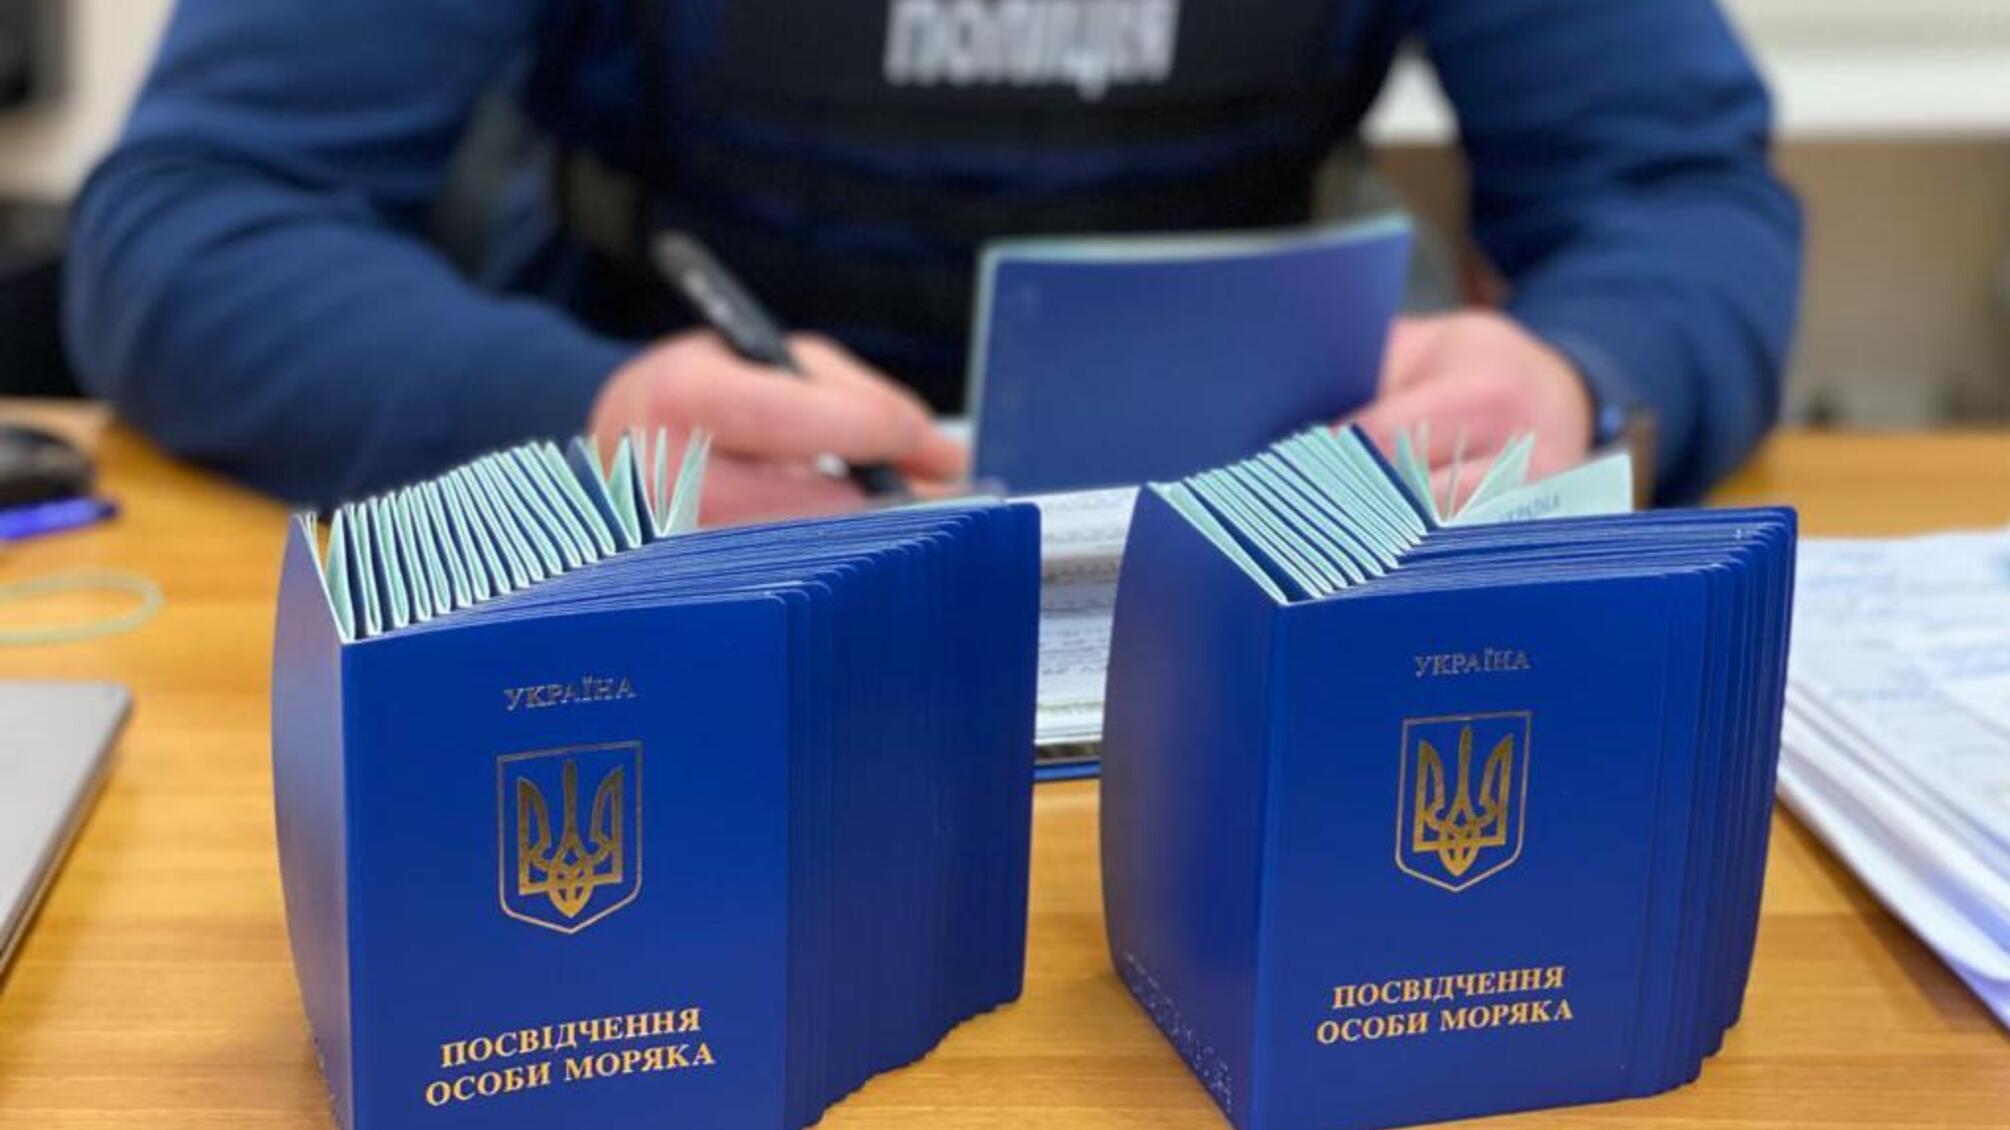 Незаконно продолжали пребывание украинских моряков за границей: в Одесской области разоблачили схему подделки документов